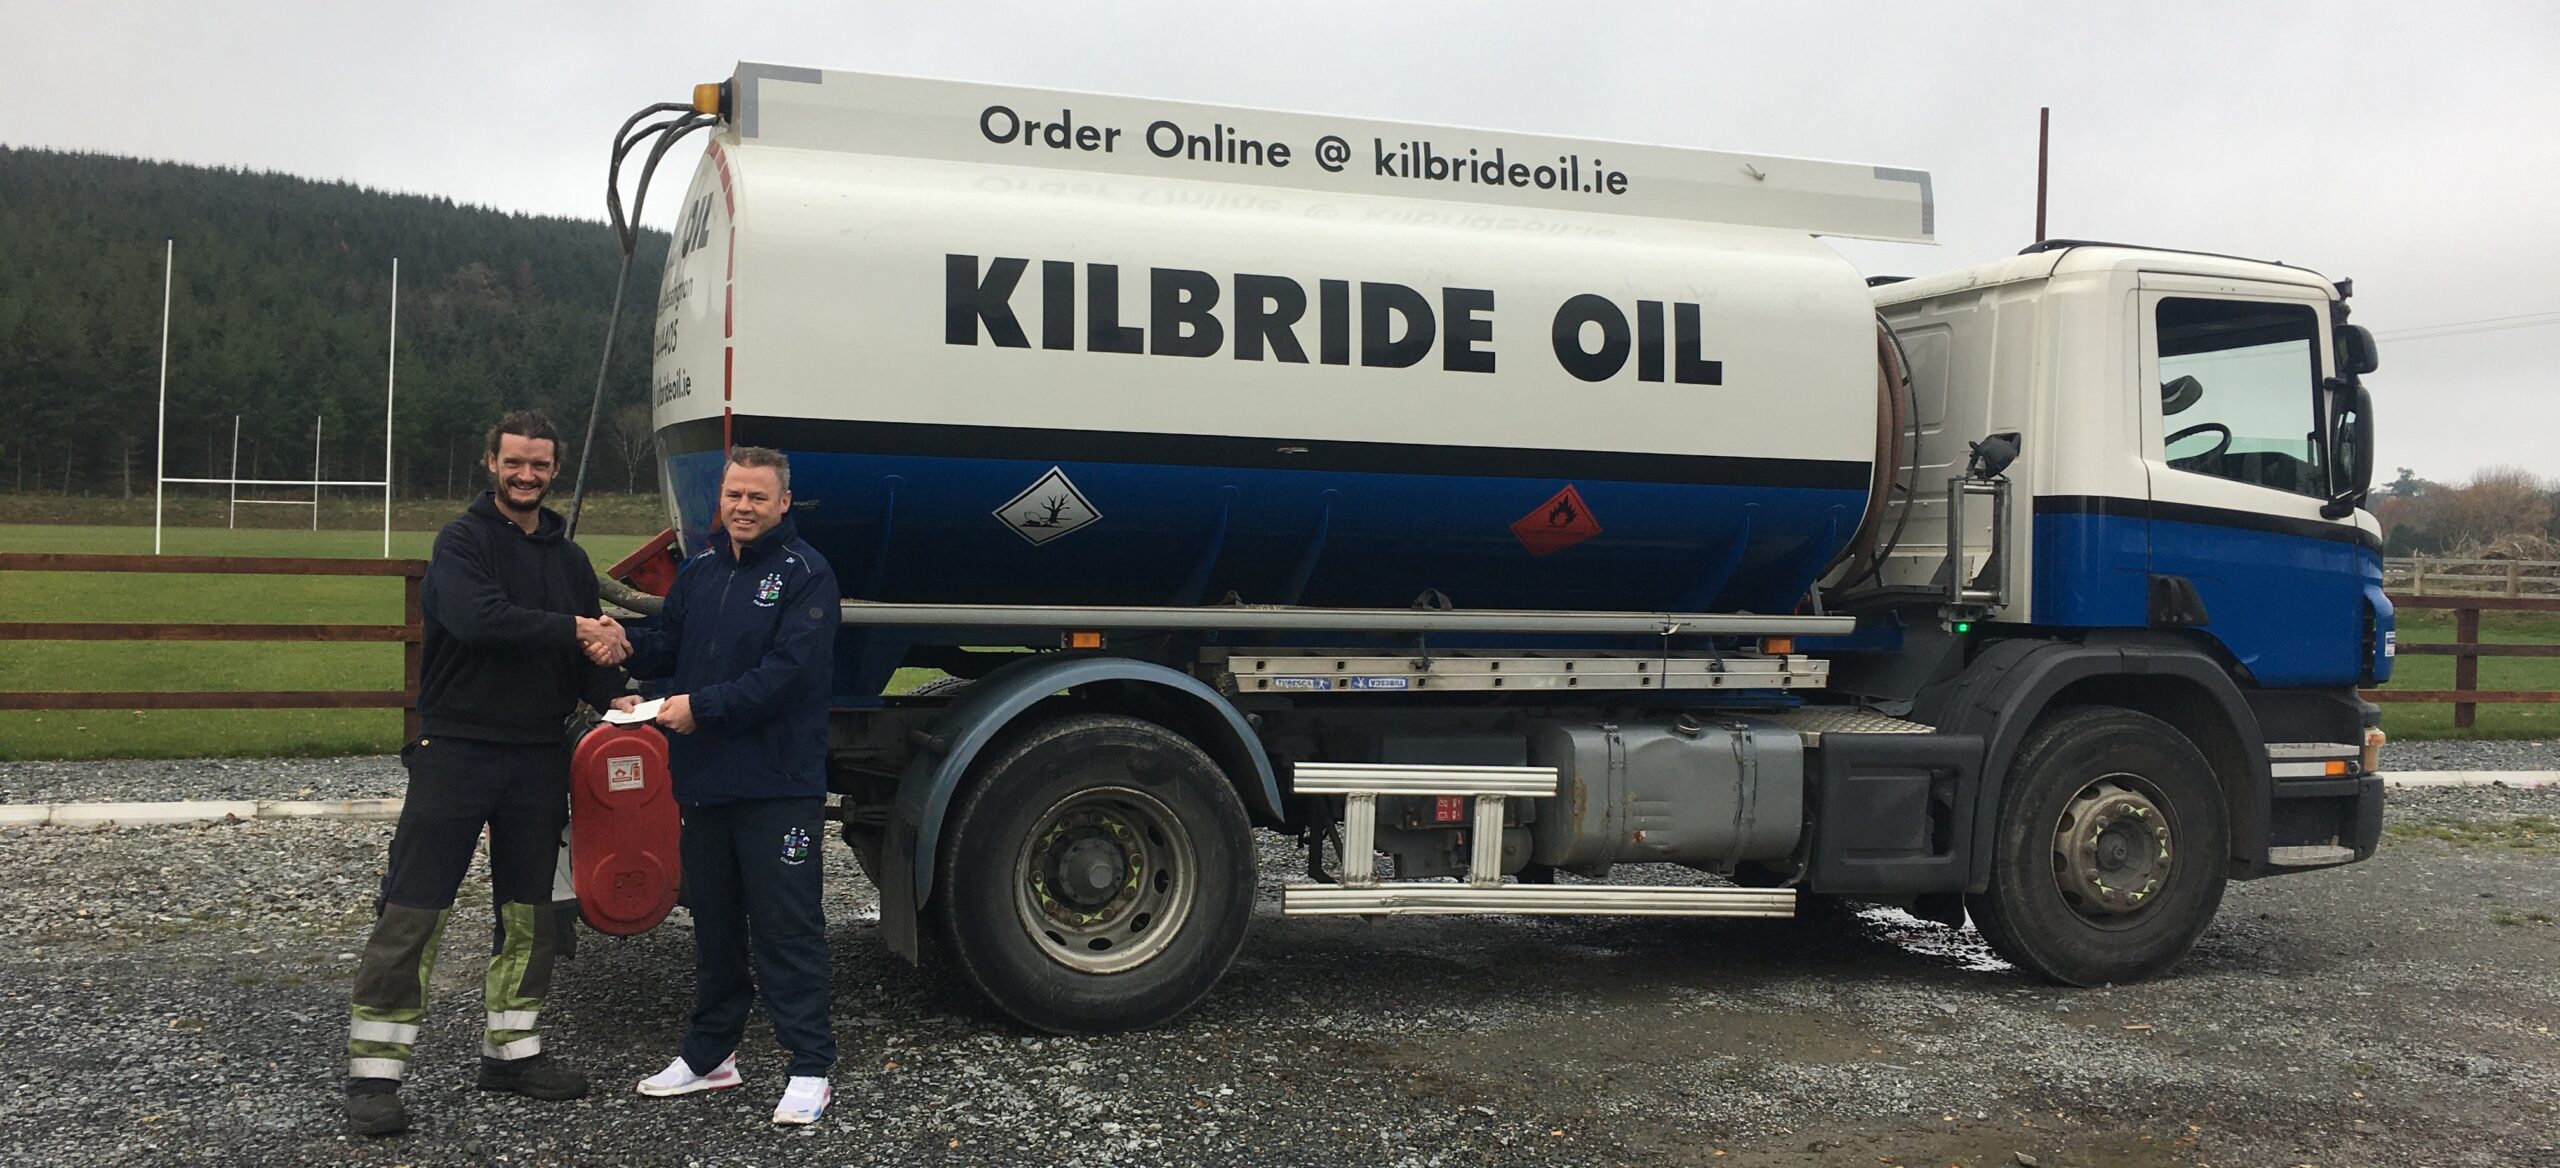 Chairman Diarmuid Haughian with Kilbride Oil's Adam Kiernan